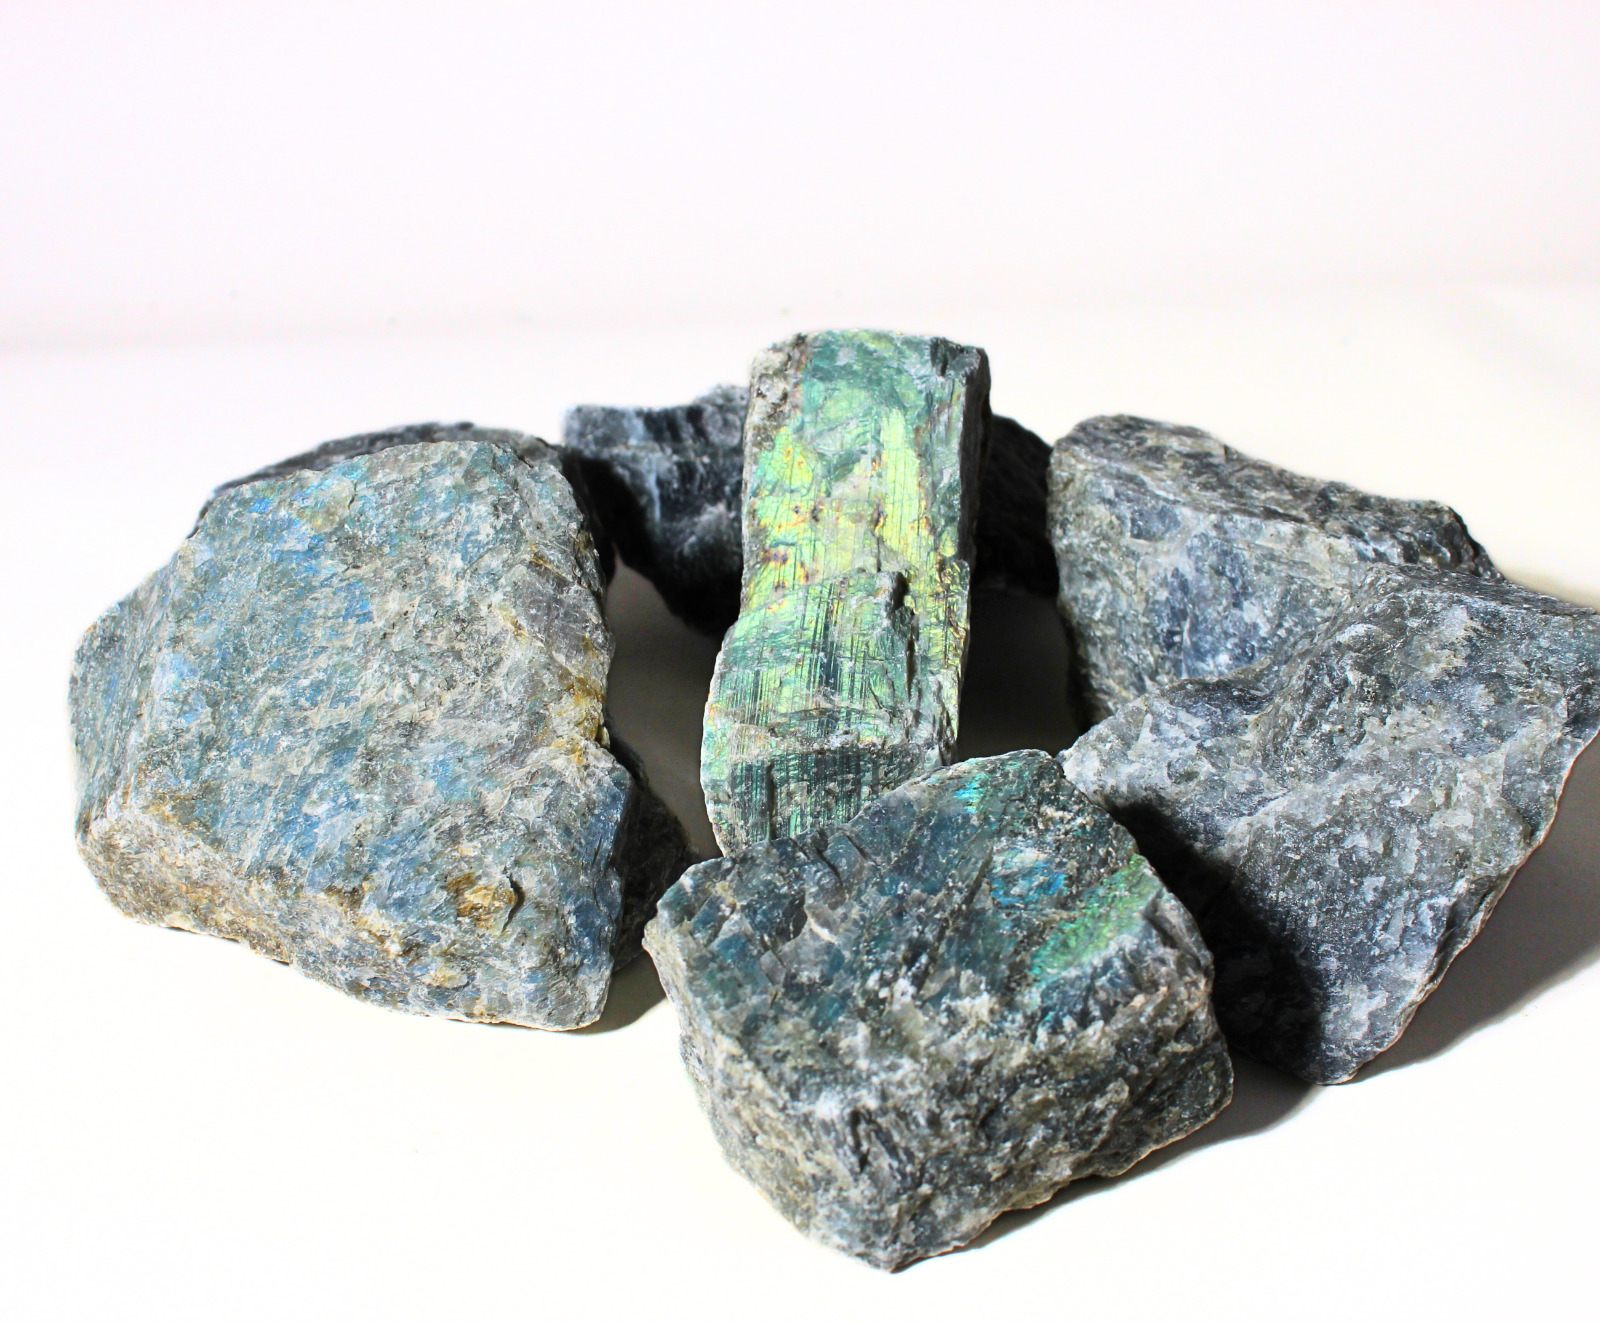 Labradorite - X-Large Rough Rocks for Crafts, Decor - Bulk Wholesale 1LB options